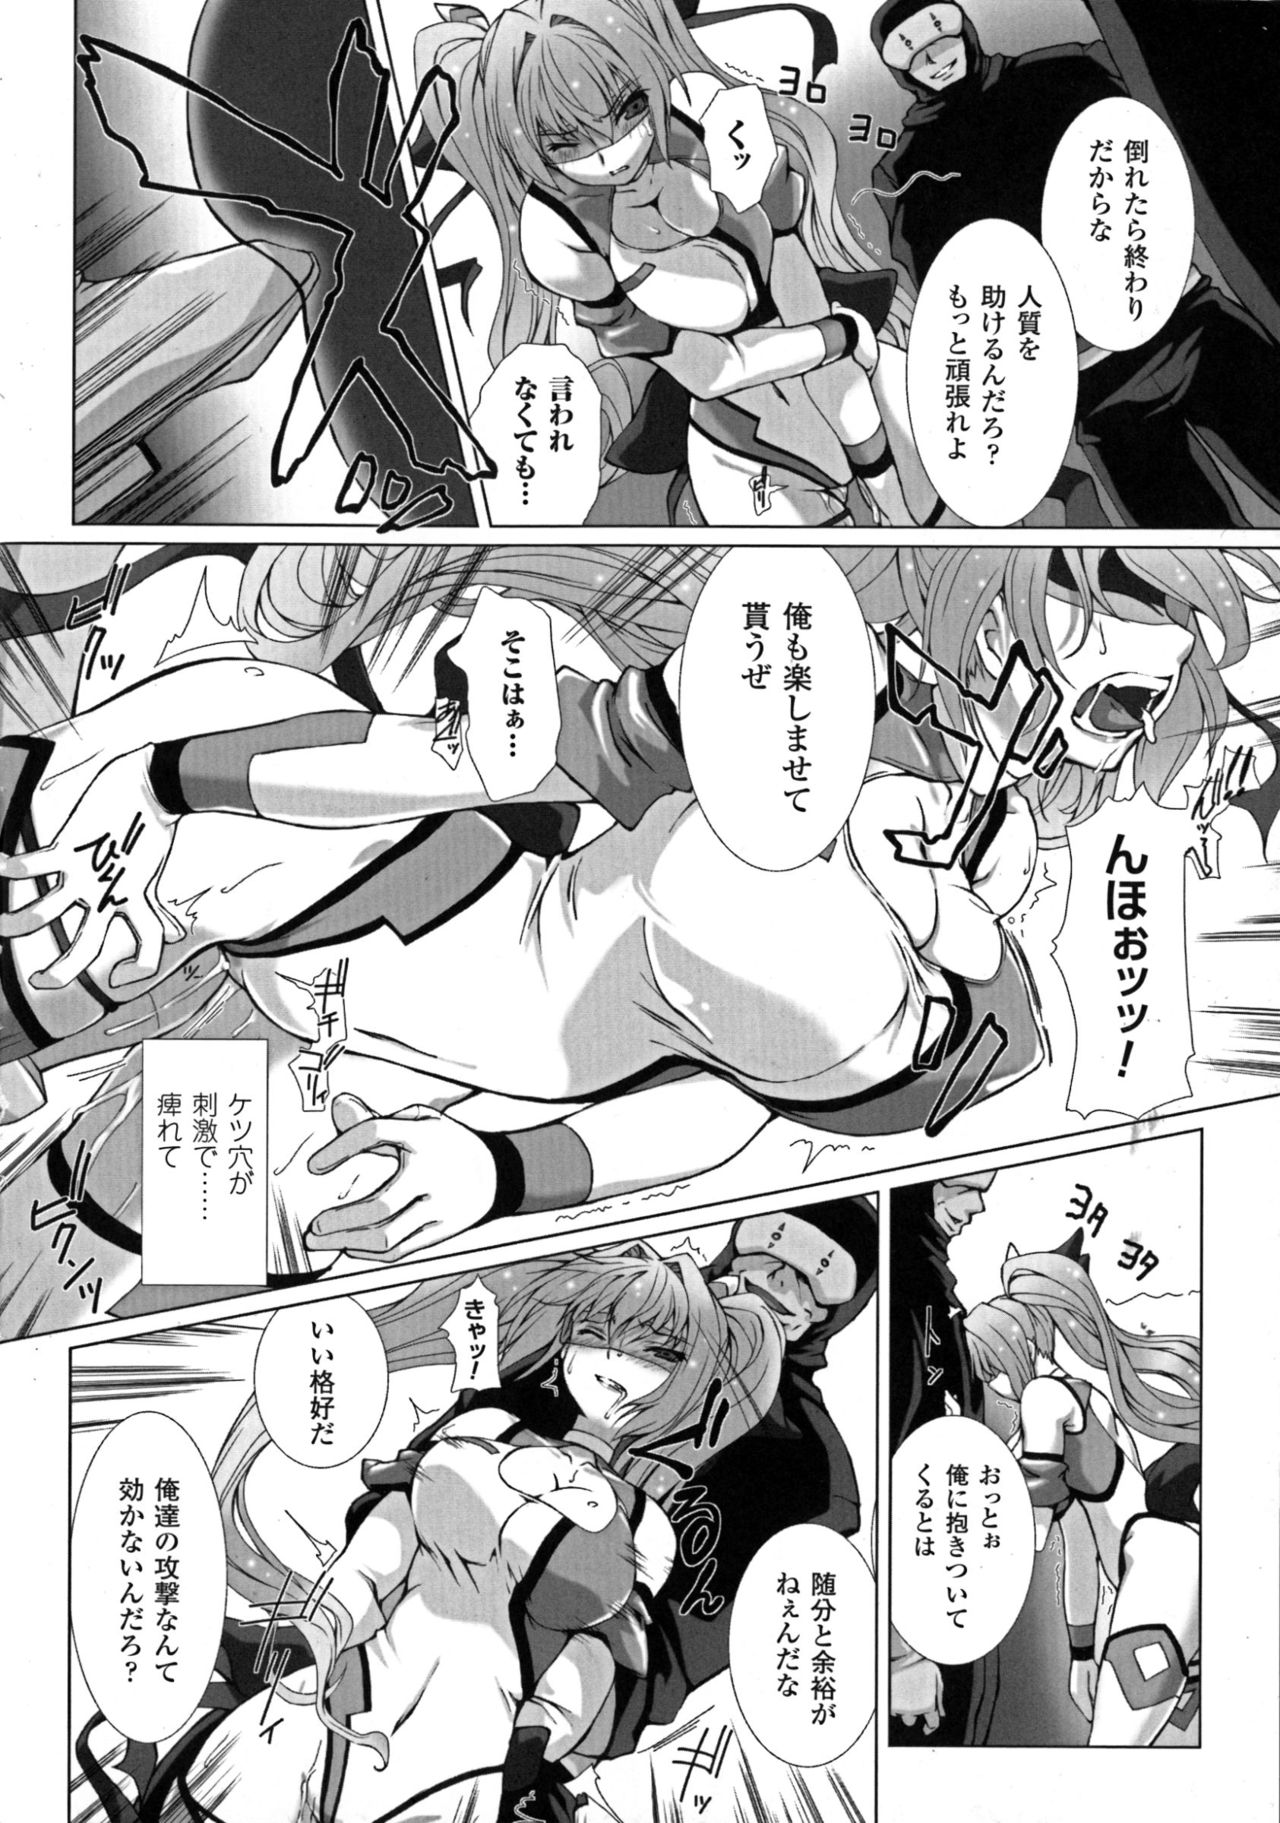 [Anthology] Seigi no Heroine Kangoku File DX vol. 6 page 16 full